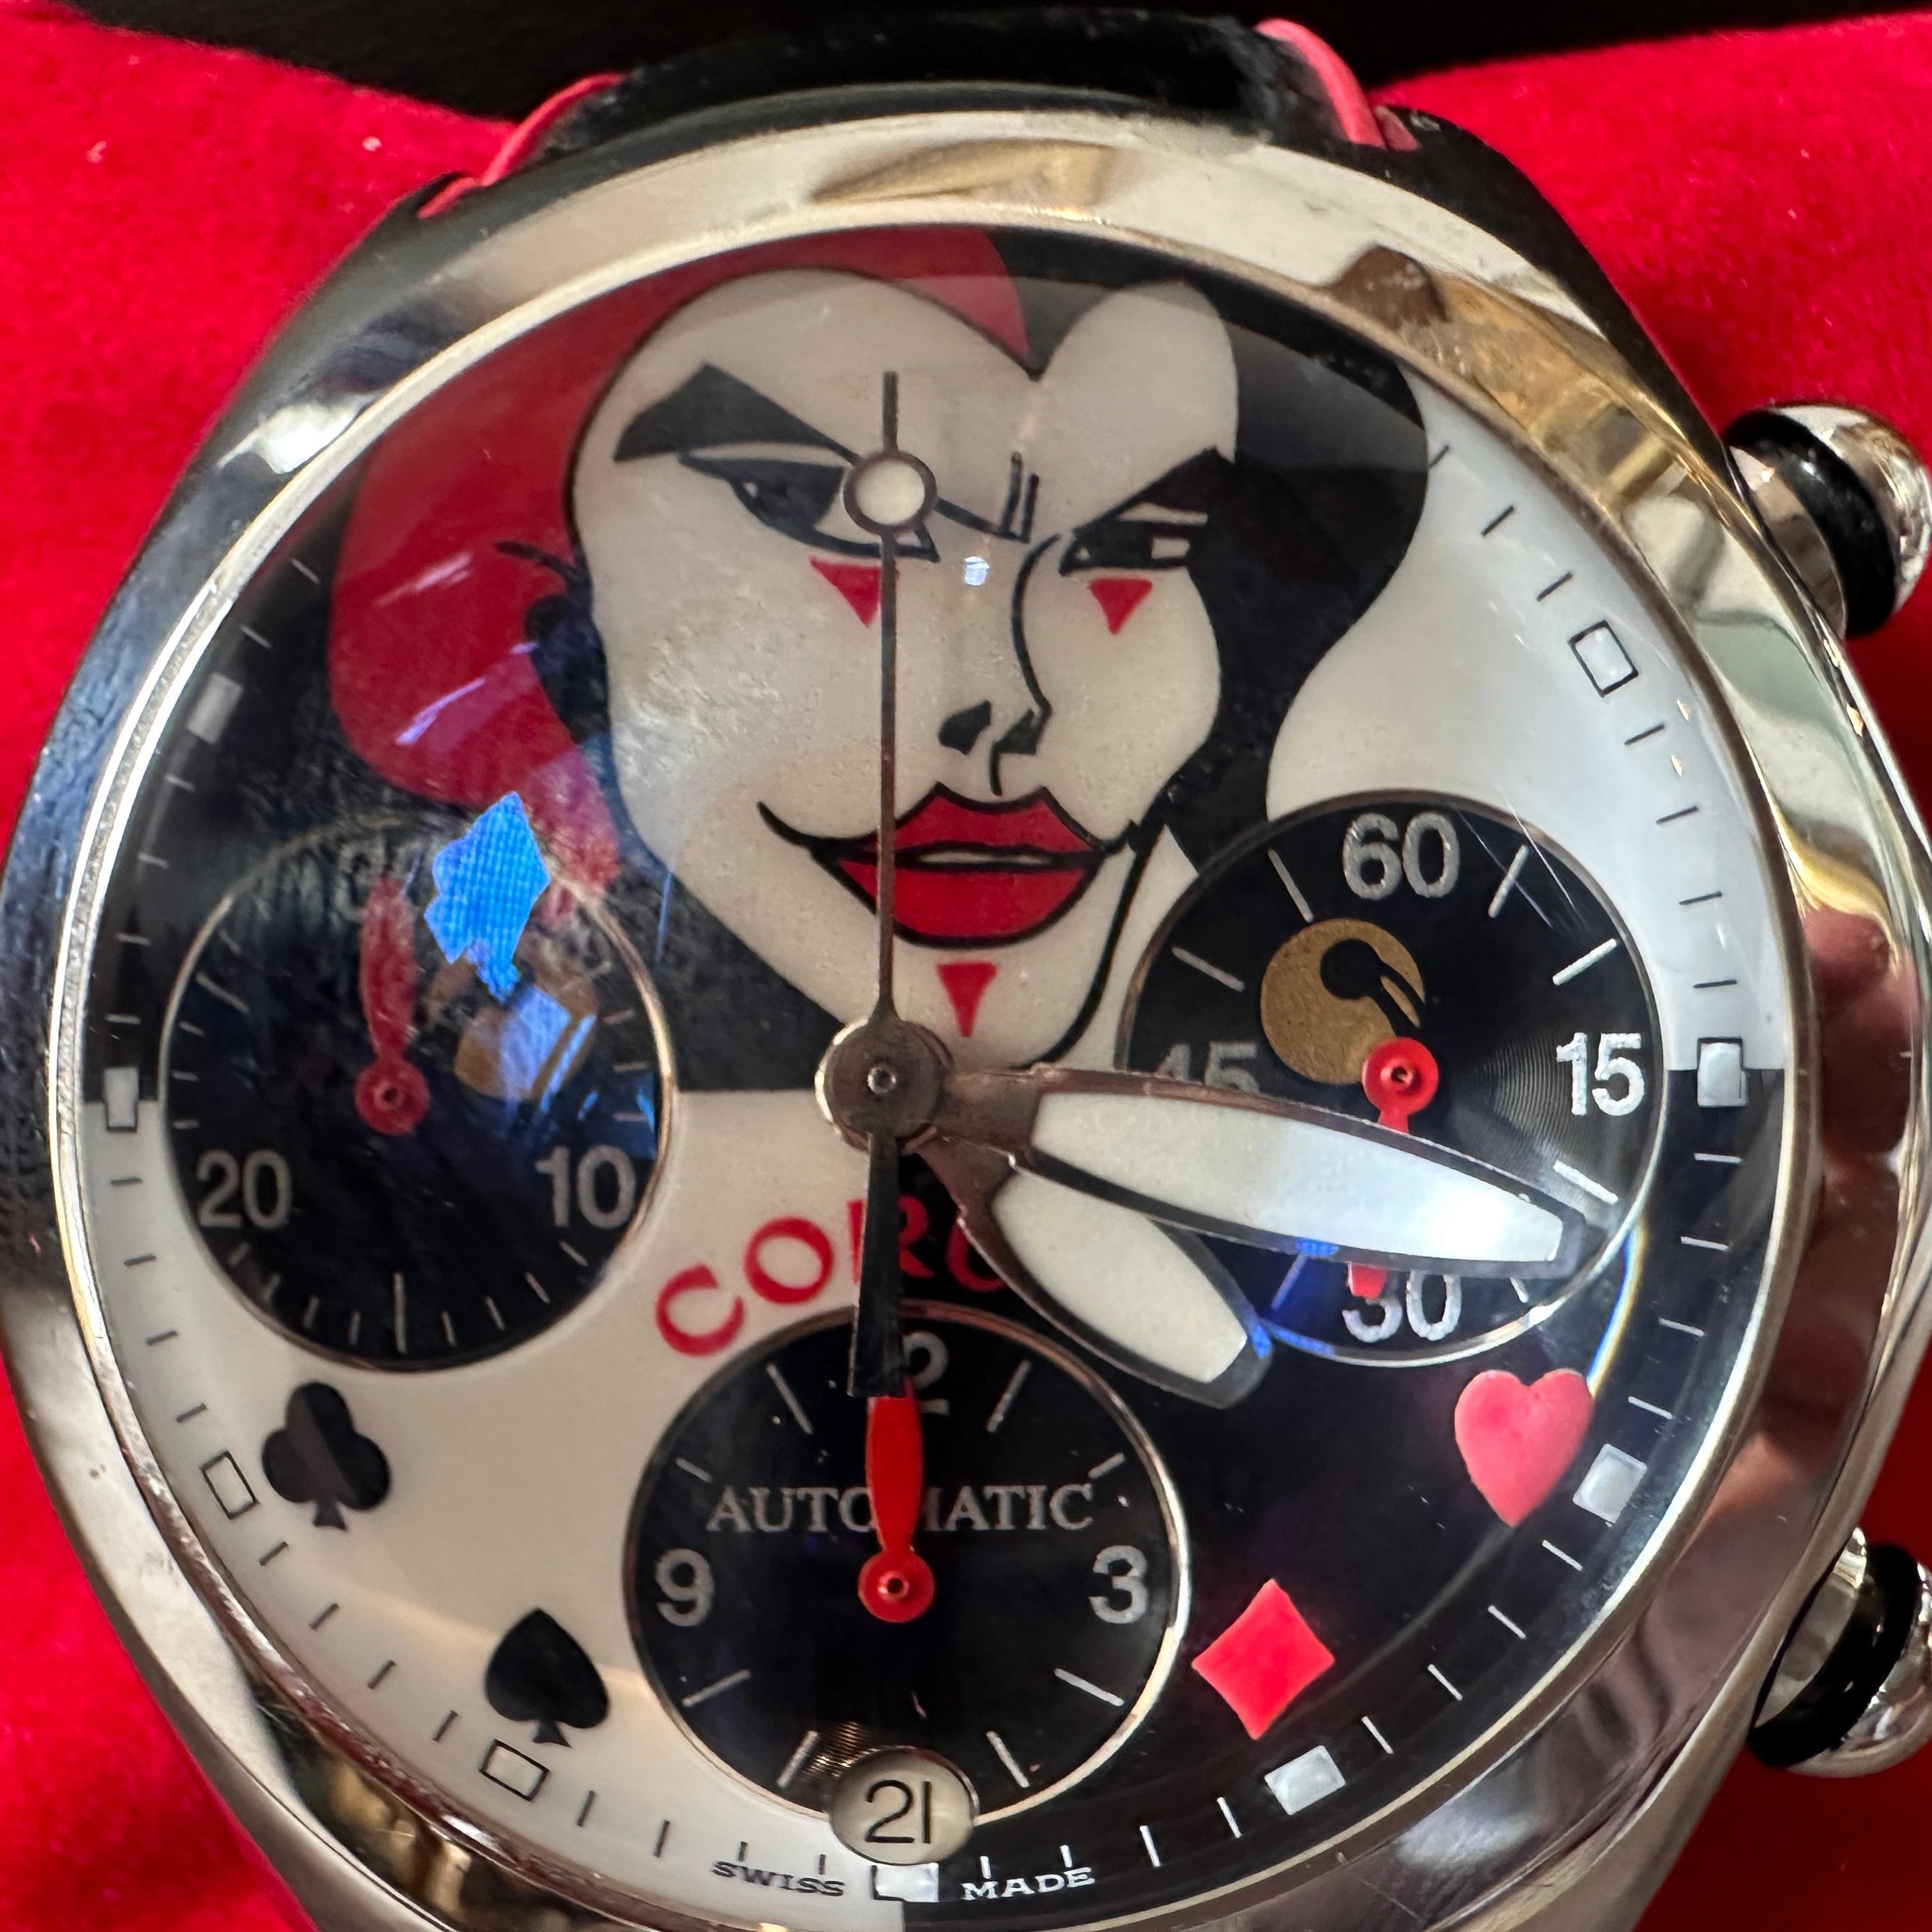 Cette montre Corum Bubble Watch Joker Limited Edition, numérotée 357/777, est une pièce d'horlogerie distinctive et recherchée, connue pour son design unique et sa disponibilité limitée. Celui-ci est en parfait état avec documents et boîte,